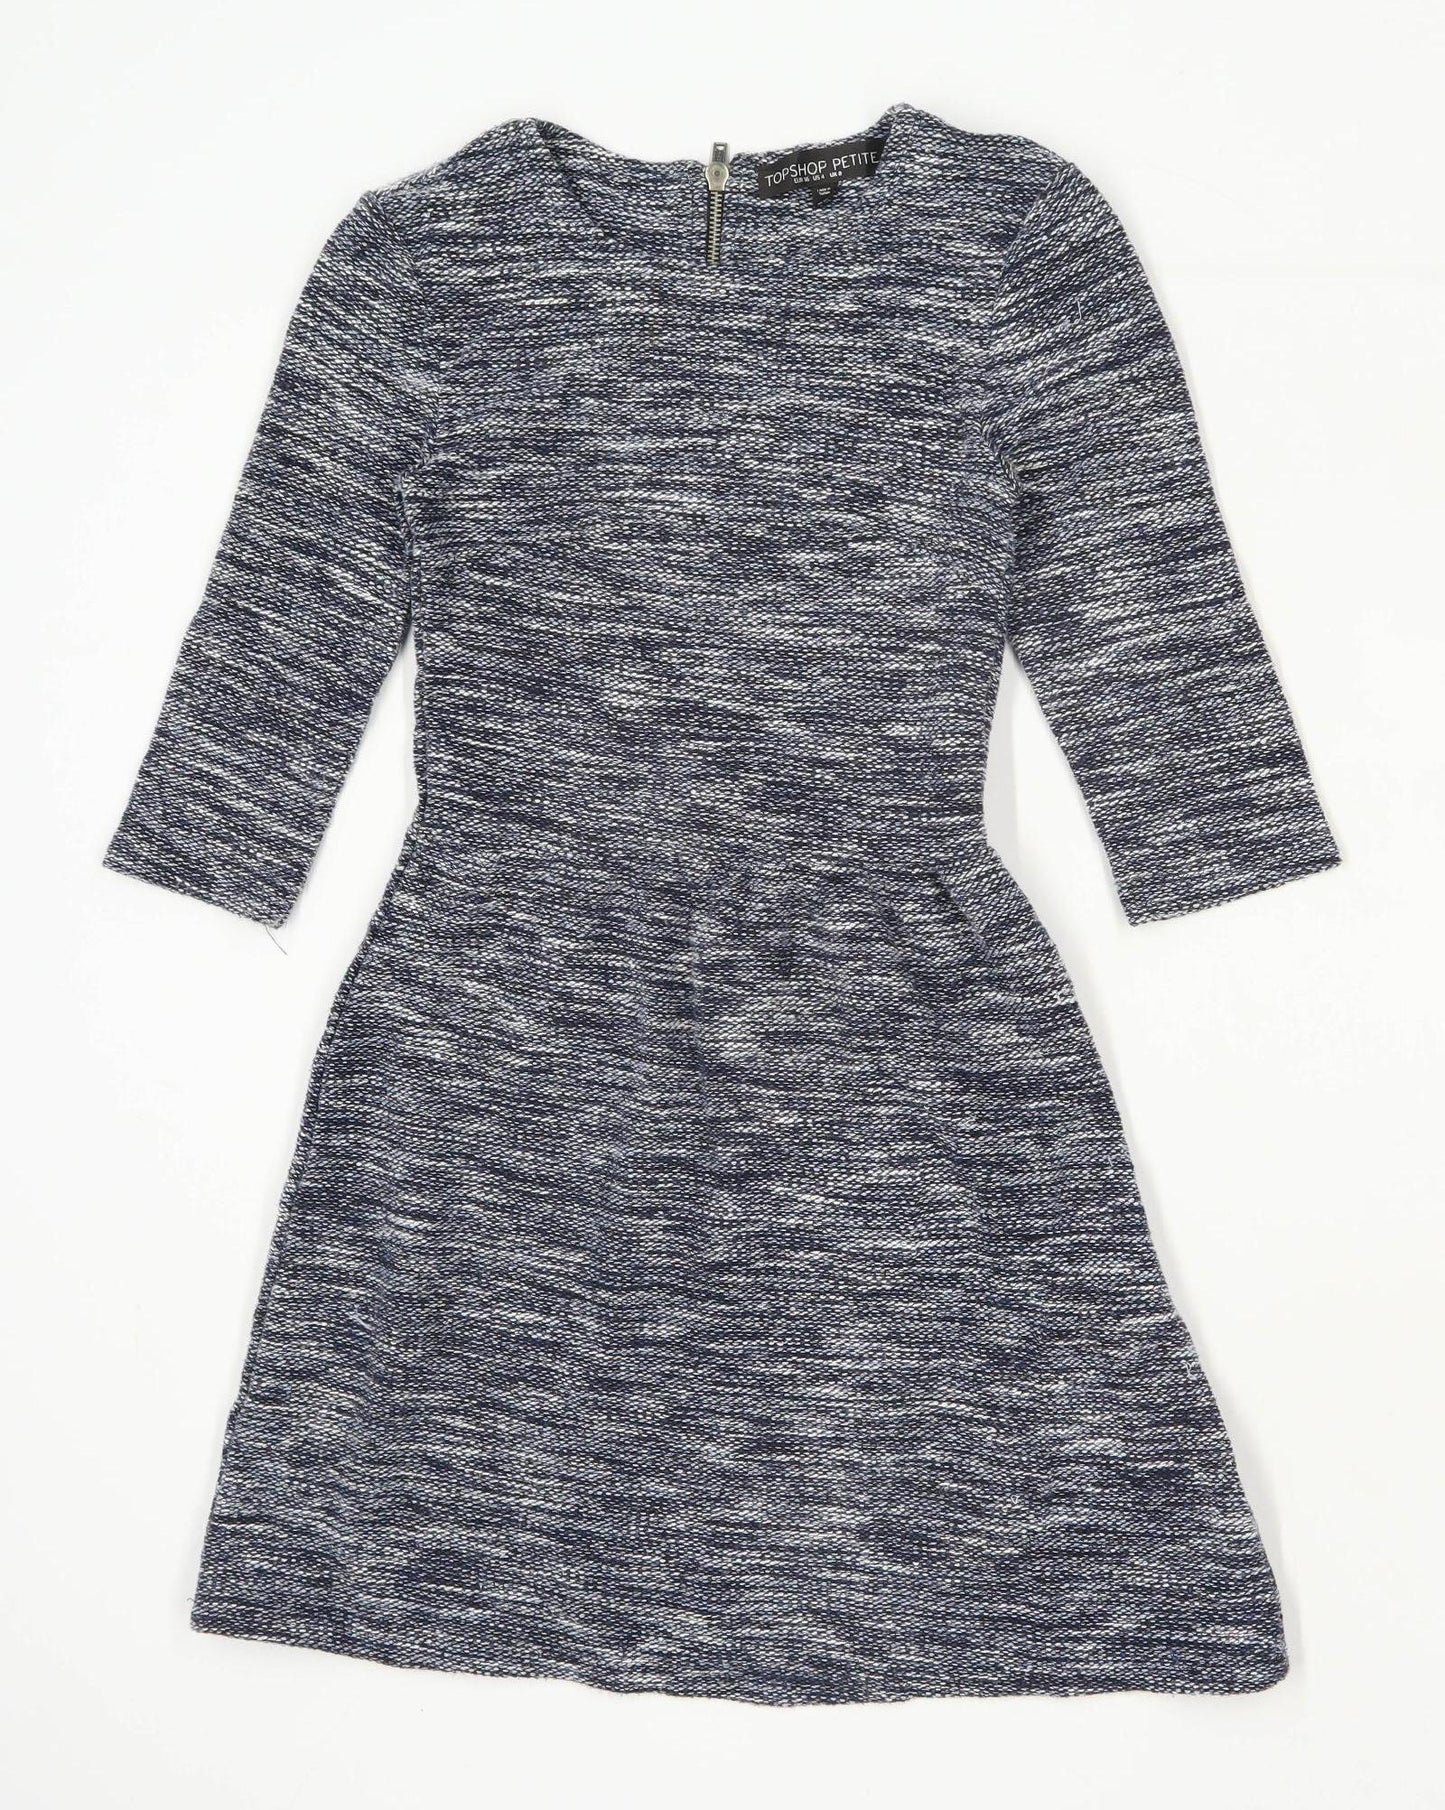 Topshop Womens Size 8 Cotton Blend Blue Skater Dress (Regular)